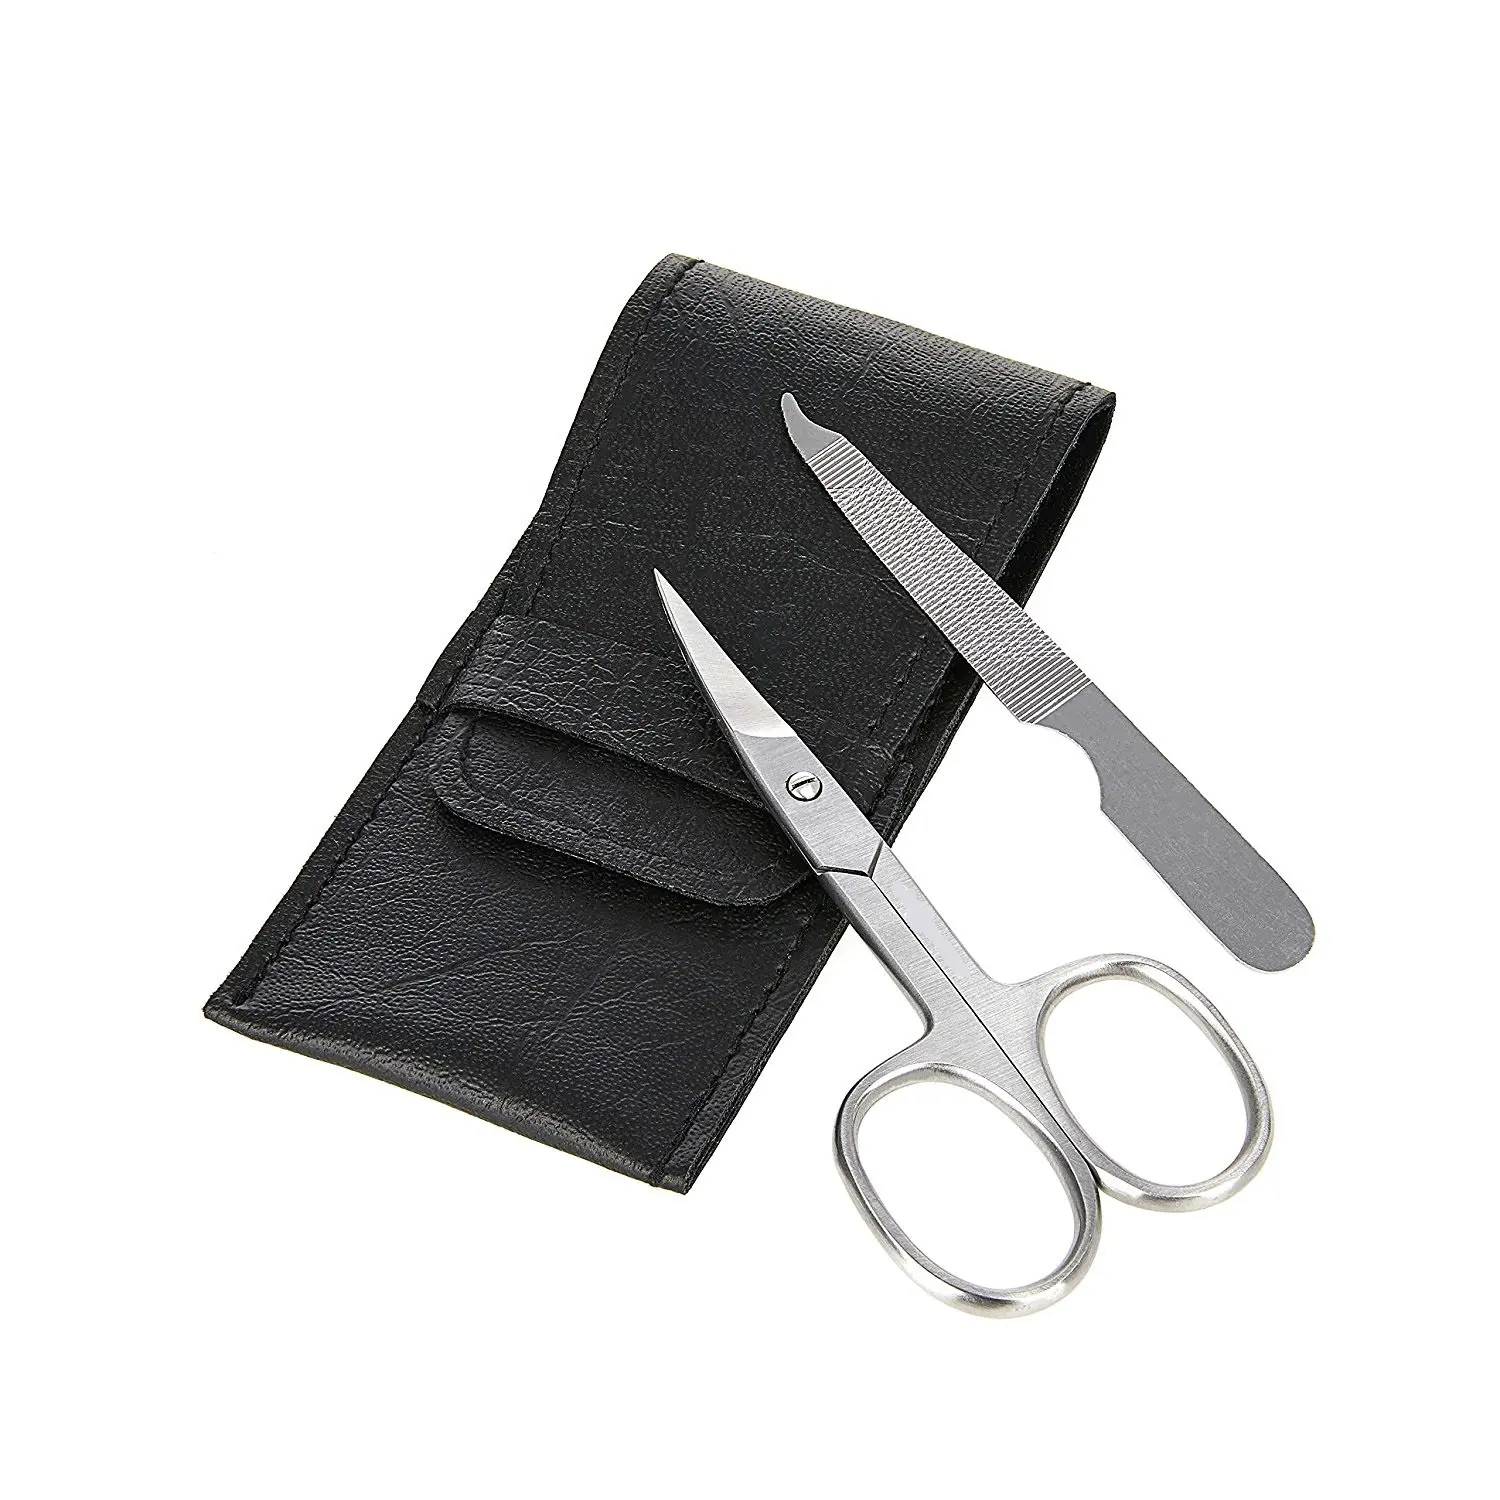 Melhor unha tesoura cortador Clipper profissional pedicure conjunto unha tesoura grooming kit couro viagem caso kit beleza tesouras